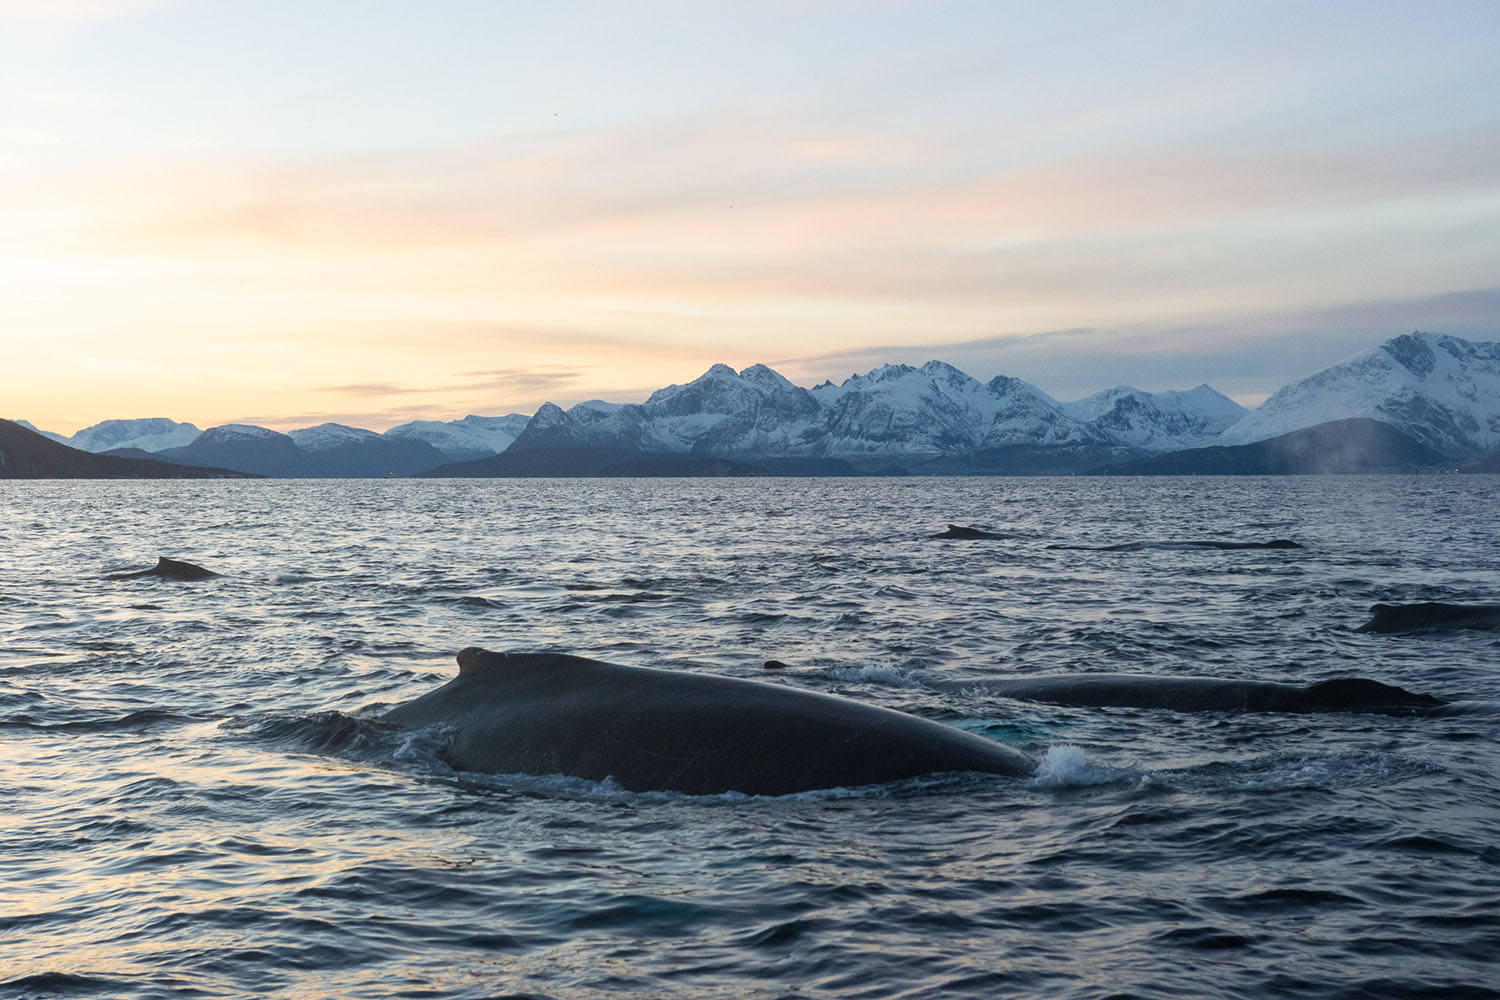 voyage scientifique - orques et baleines a bosse de norvege 13